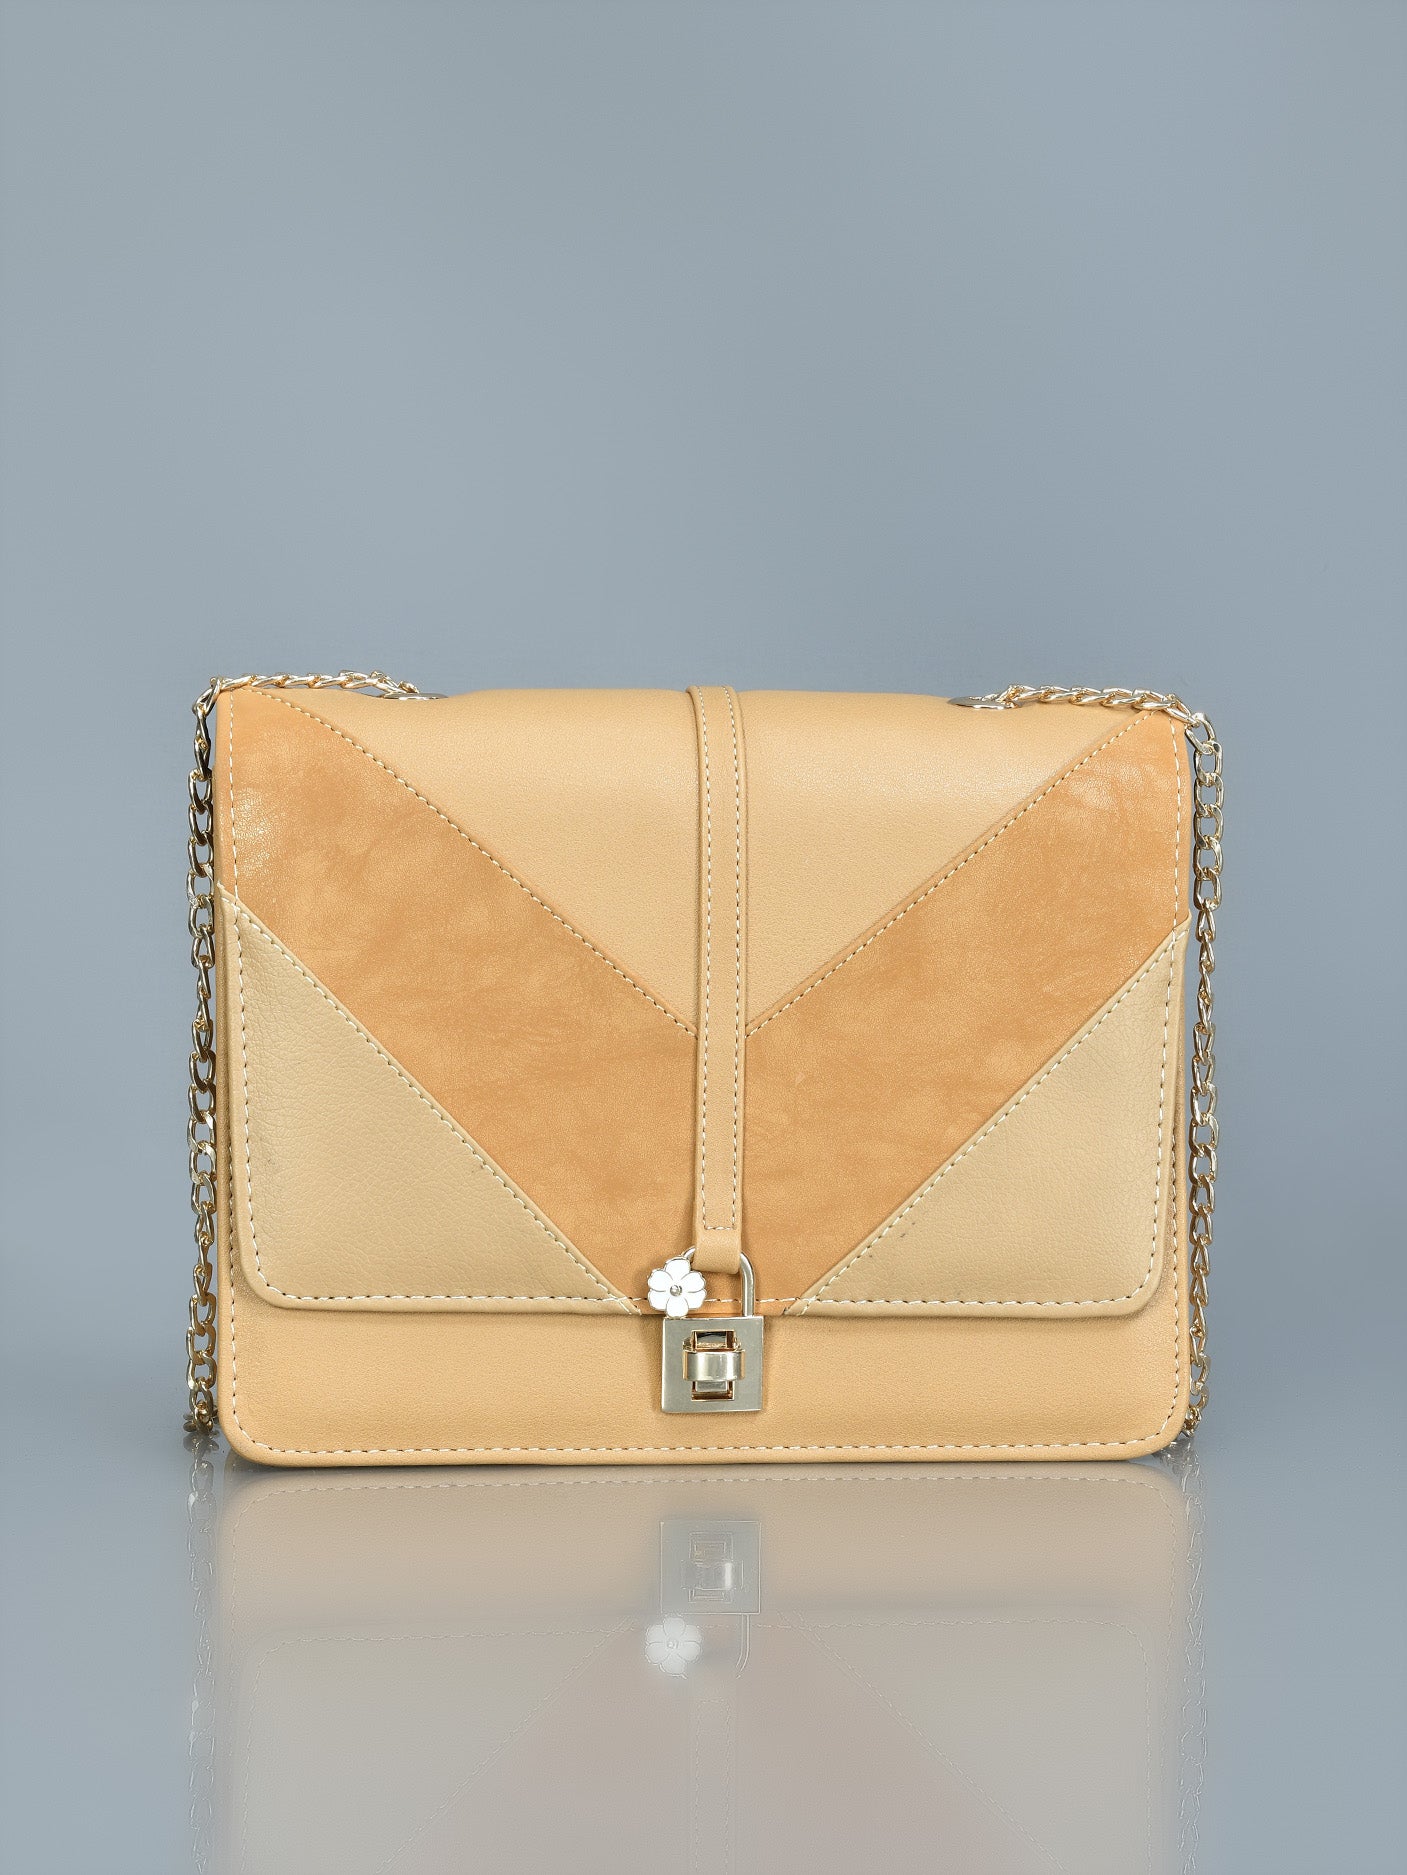 lock-detail-handbag